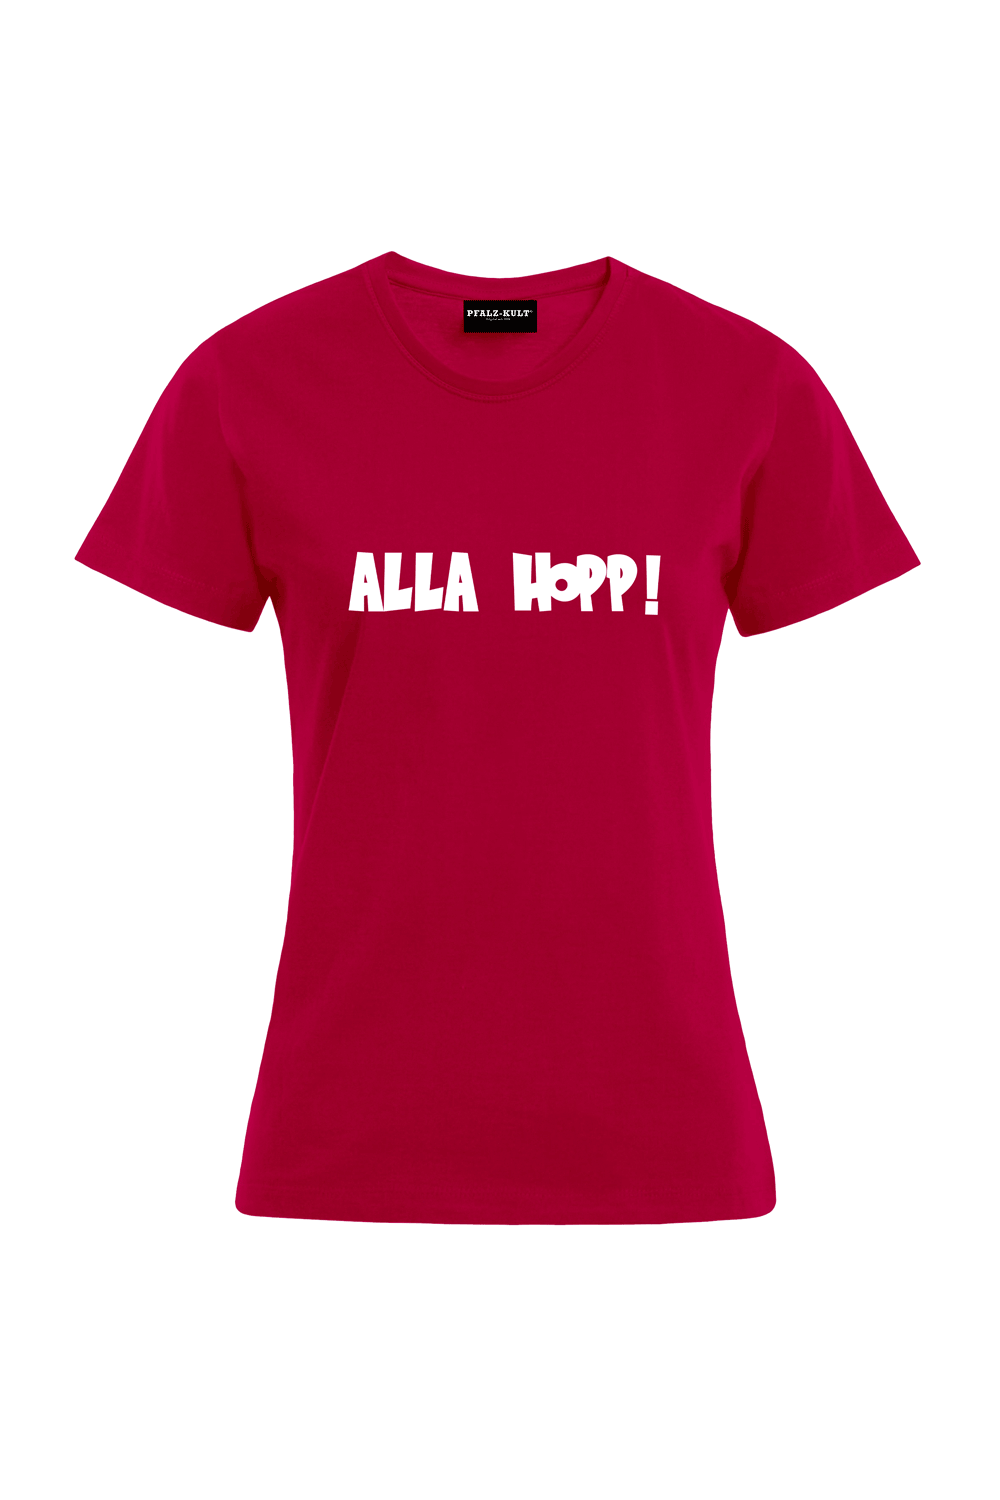 Alla Hopp - Frauen T-Shirt